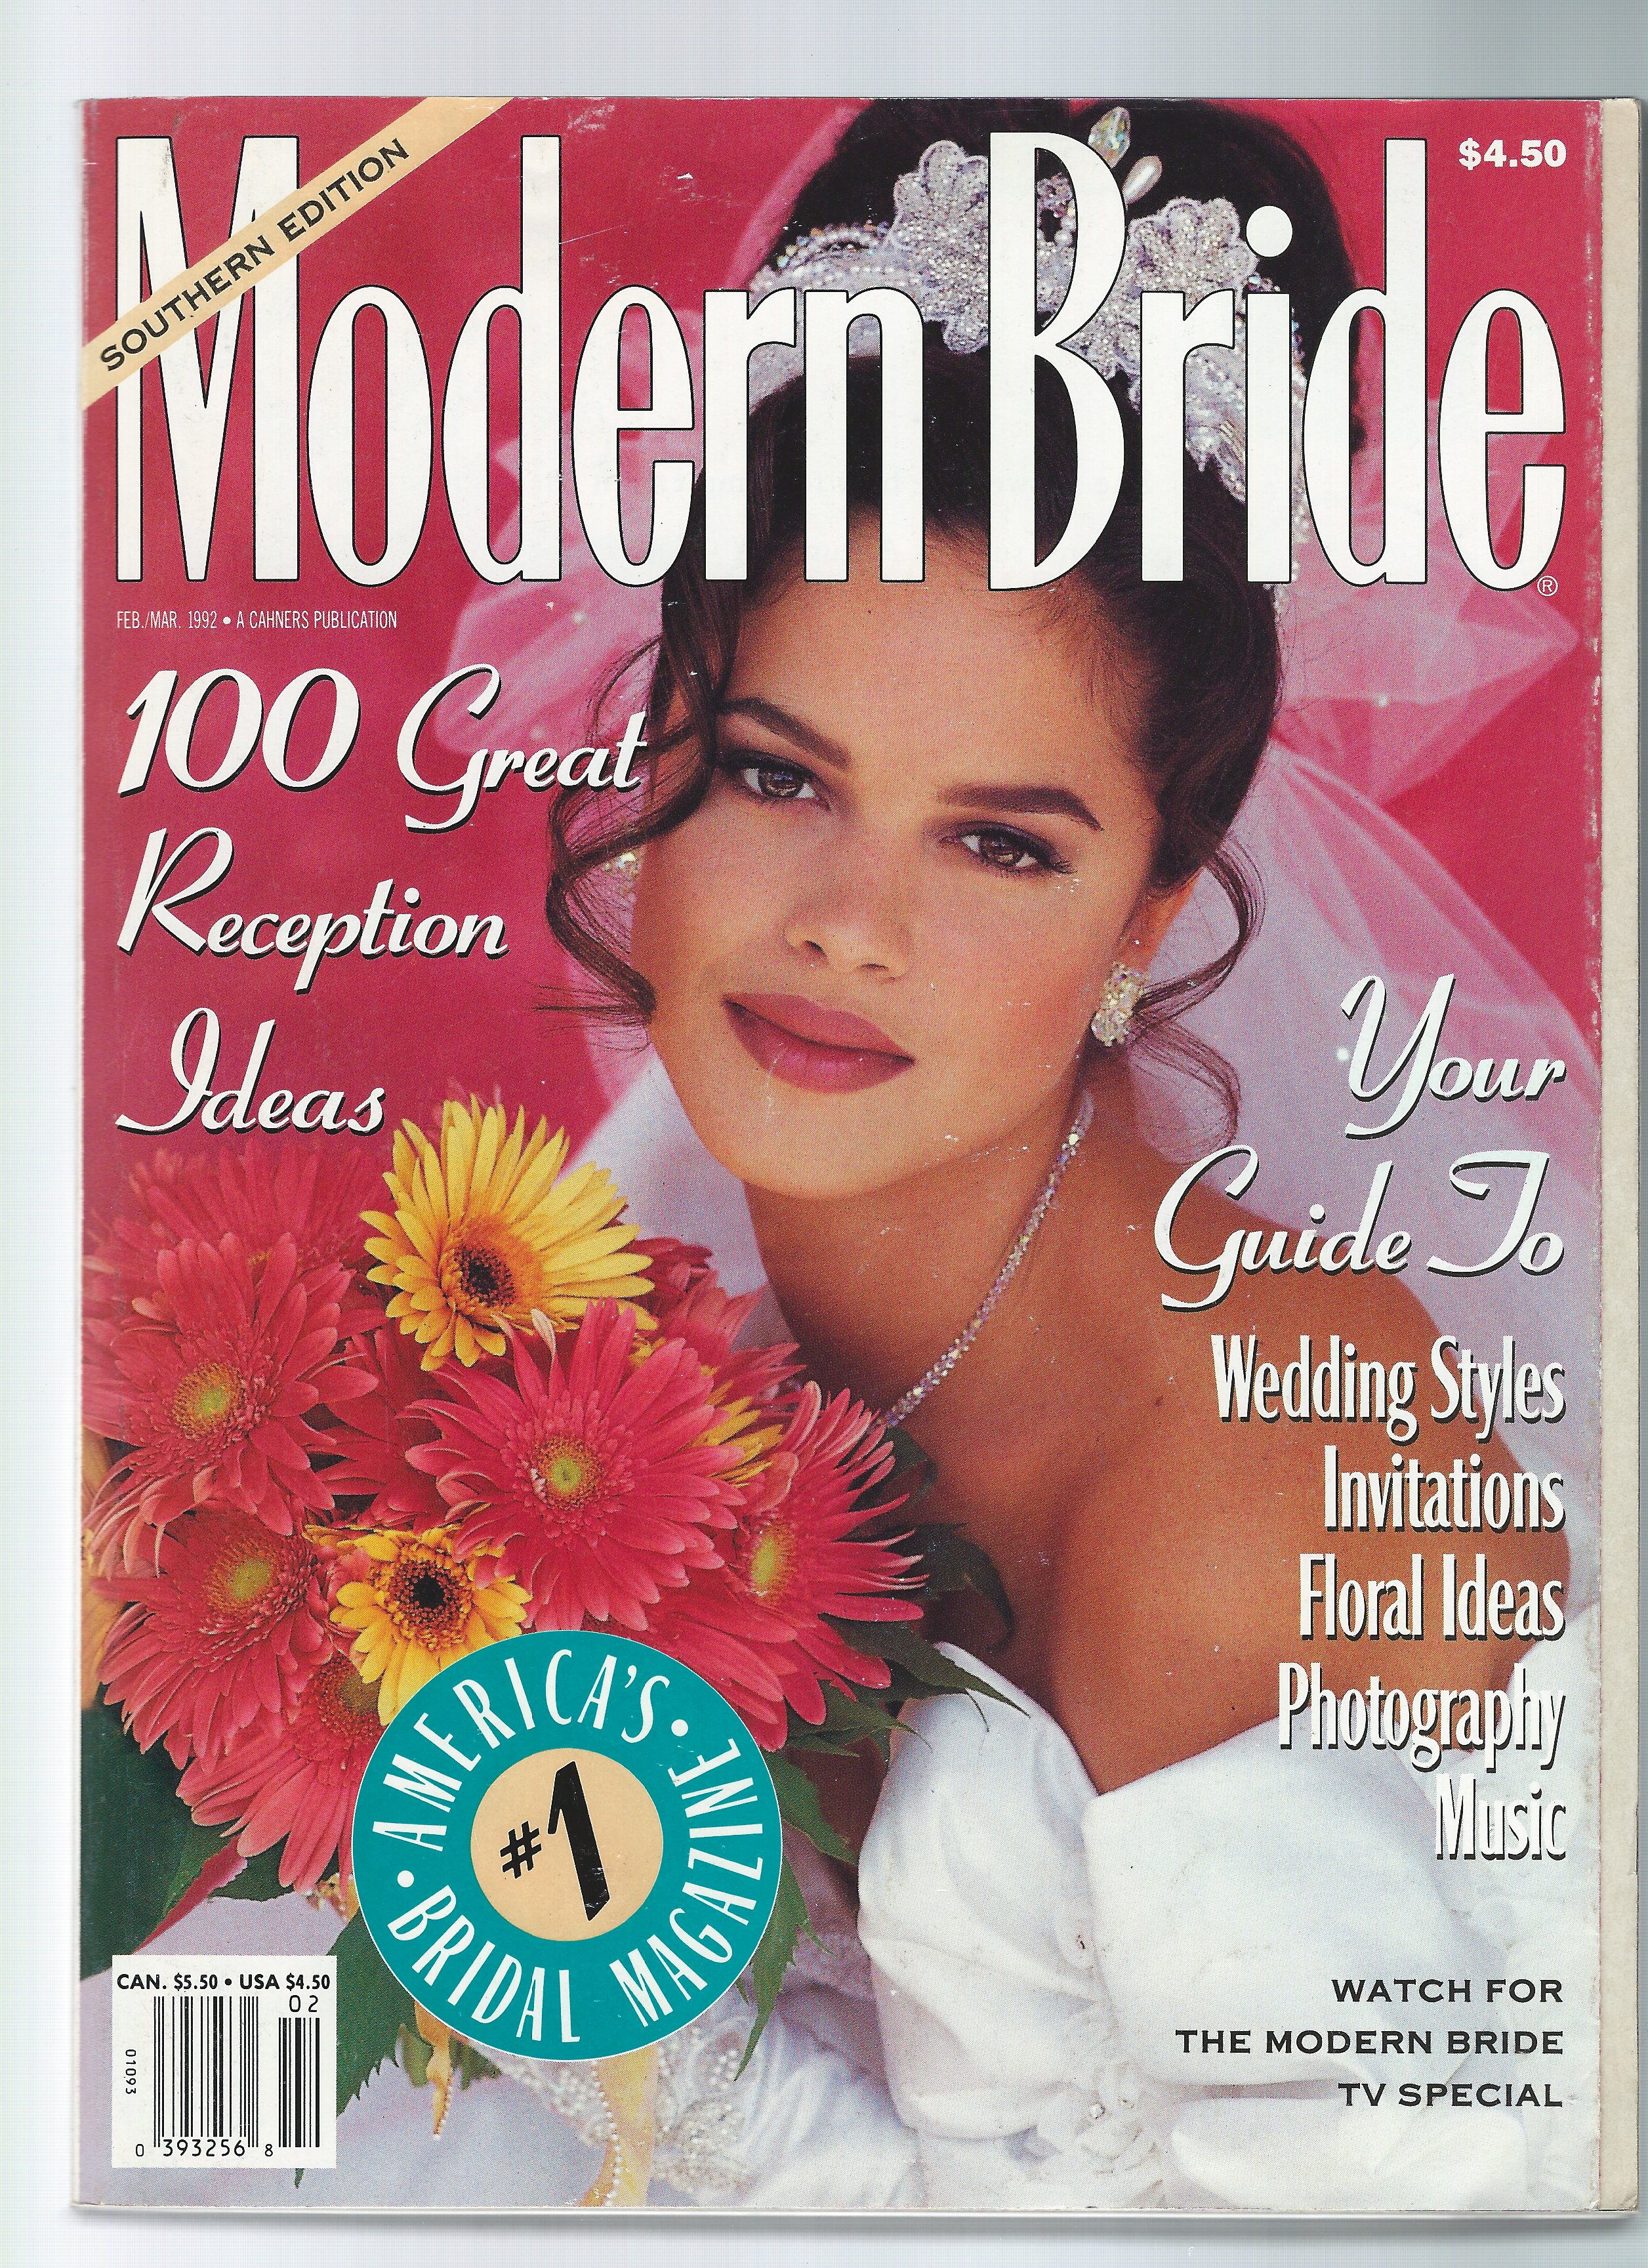 Amy Elmore- 1988 Seventeen Magazine Cover Model Winner